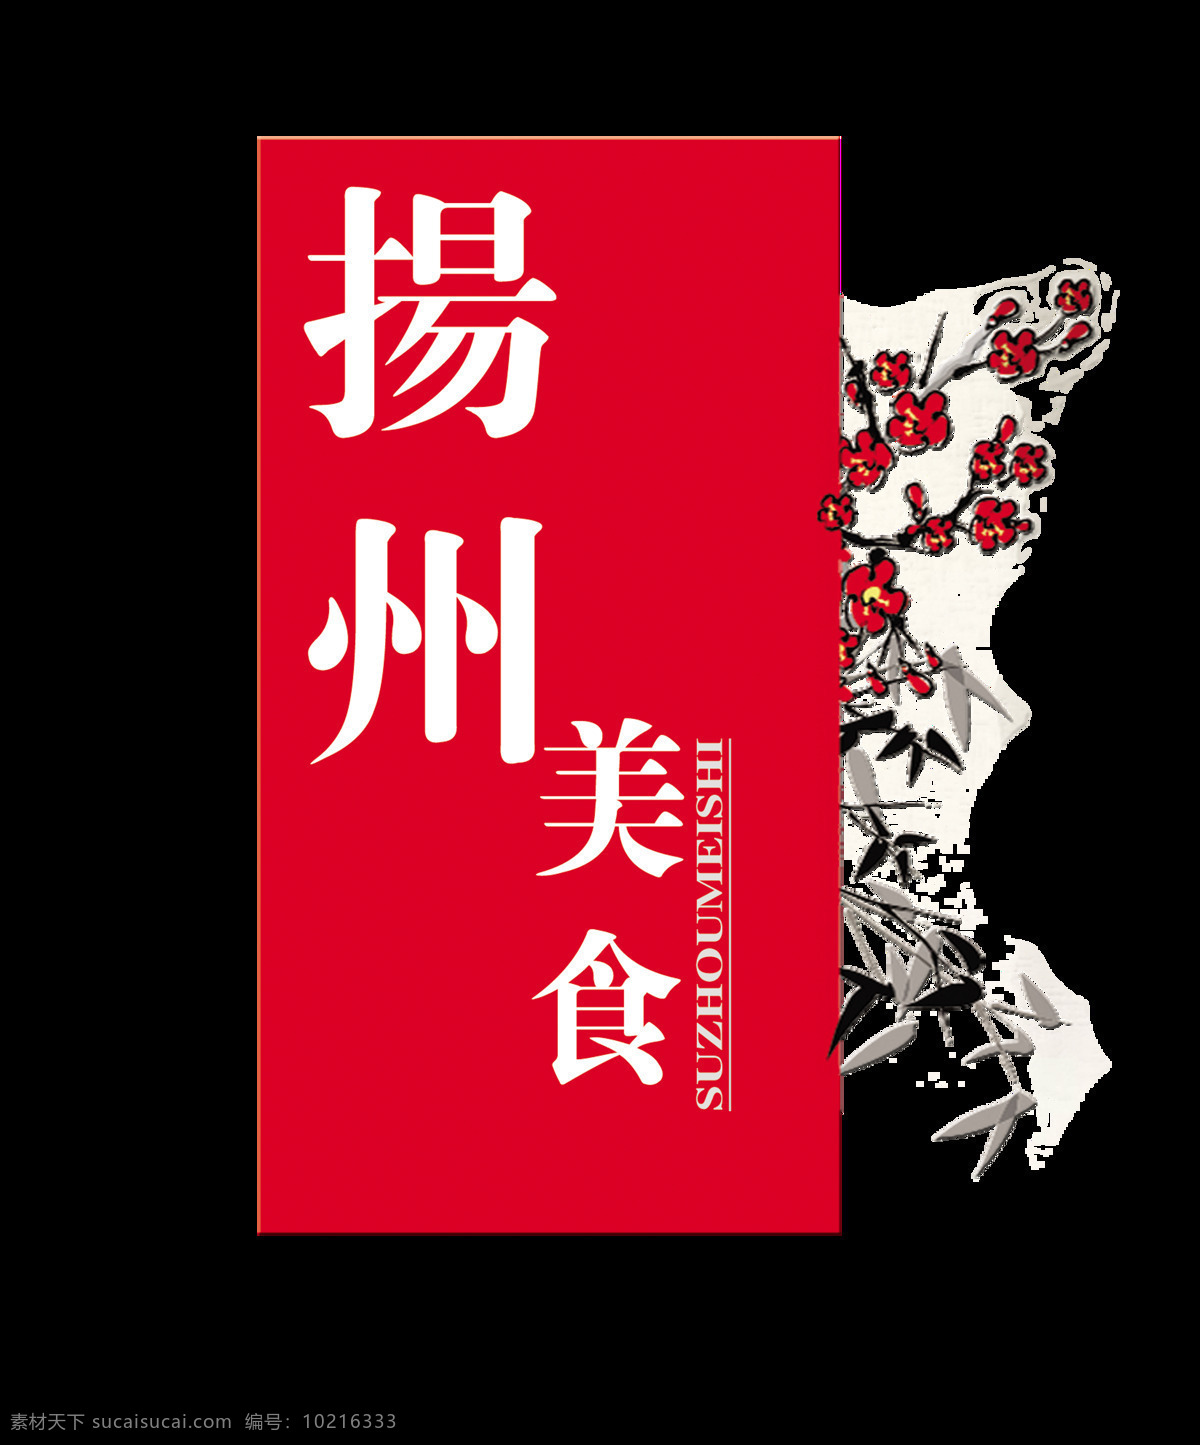 扬州 美食 花朵 竹子 艺术 字 字体 广告 扬州美食 美味 特色 艺术字 海报